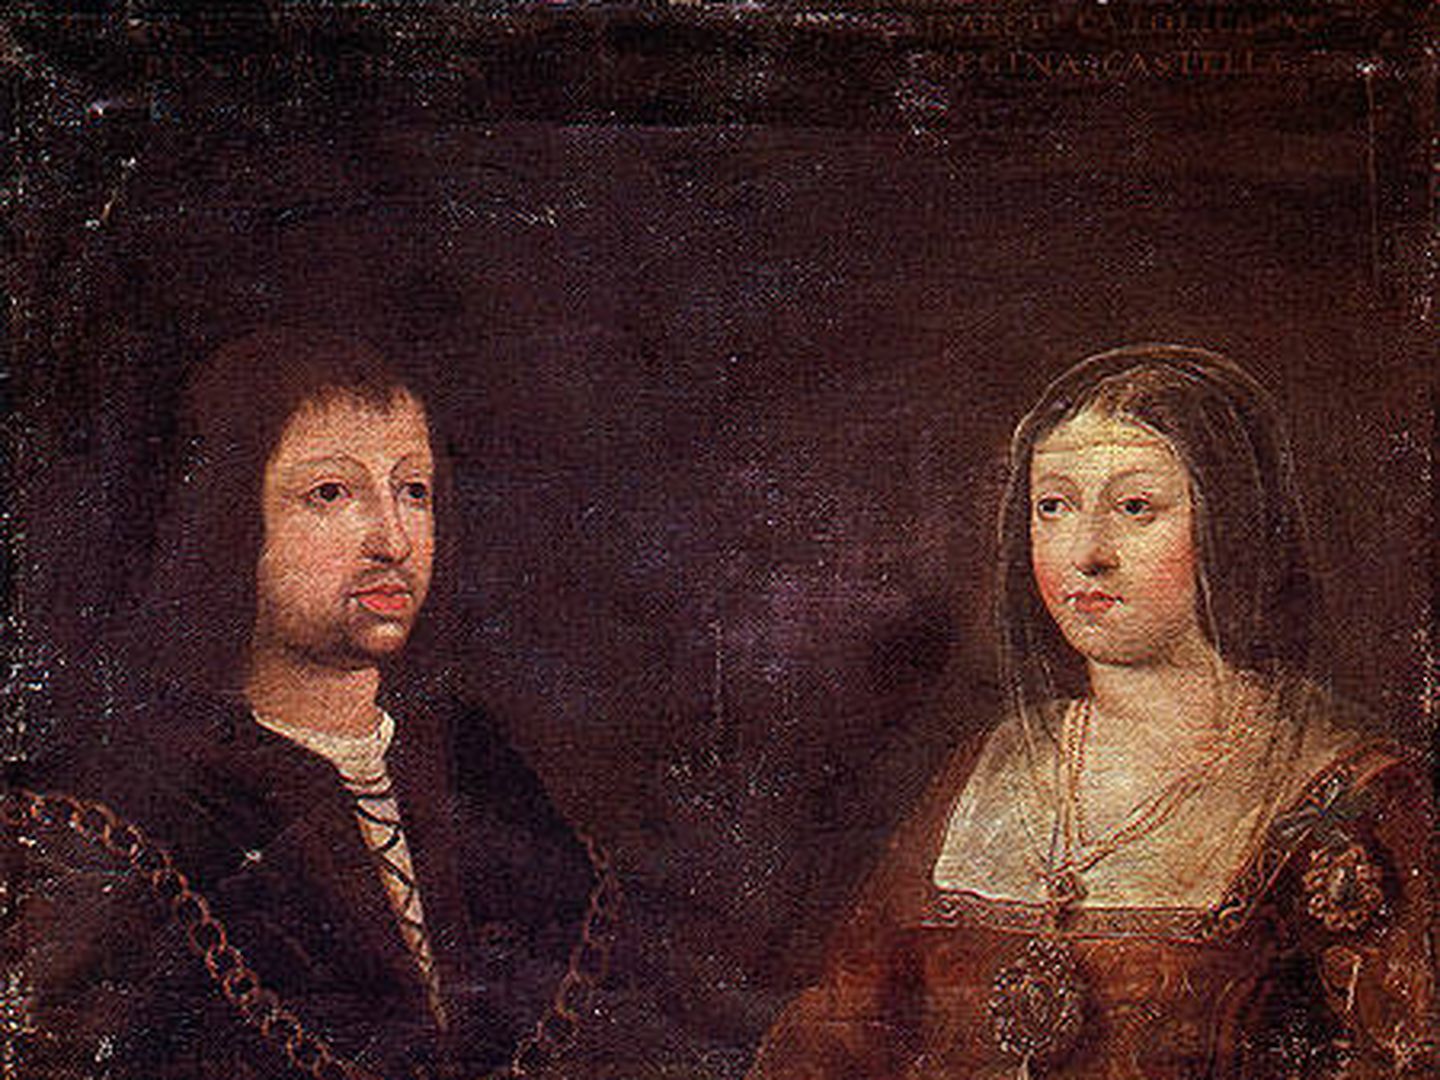 El matrimonio de los Reyes Católicos en 1469 unió los reinos de Castilla y Aragón. (Wikimedia Commons)